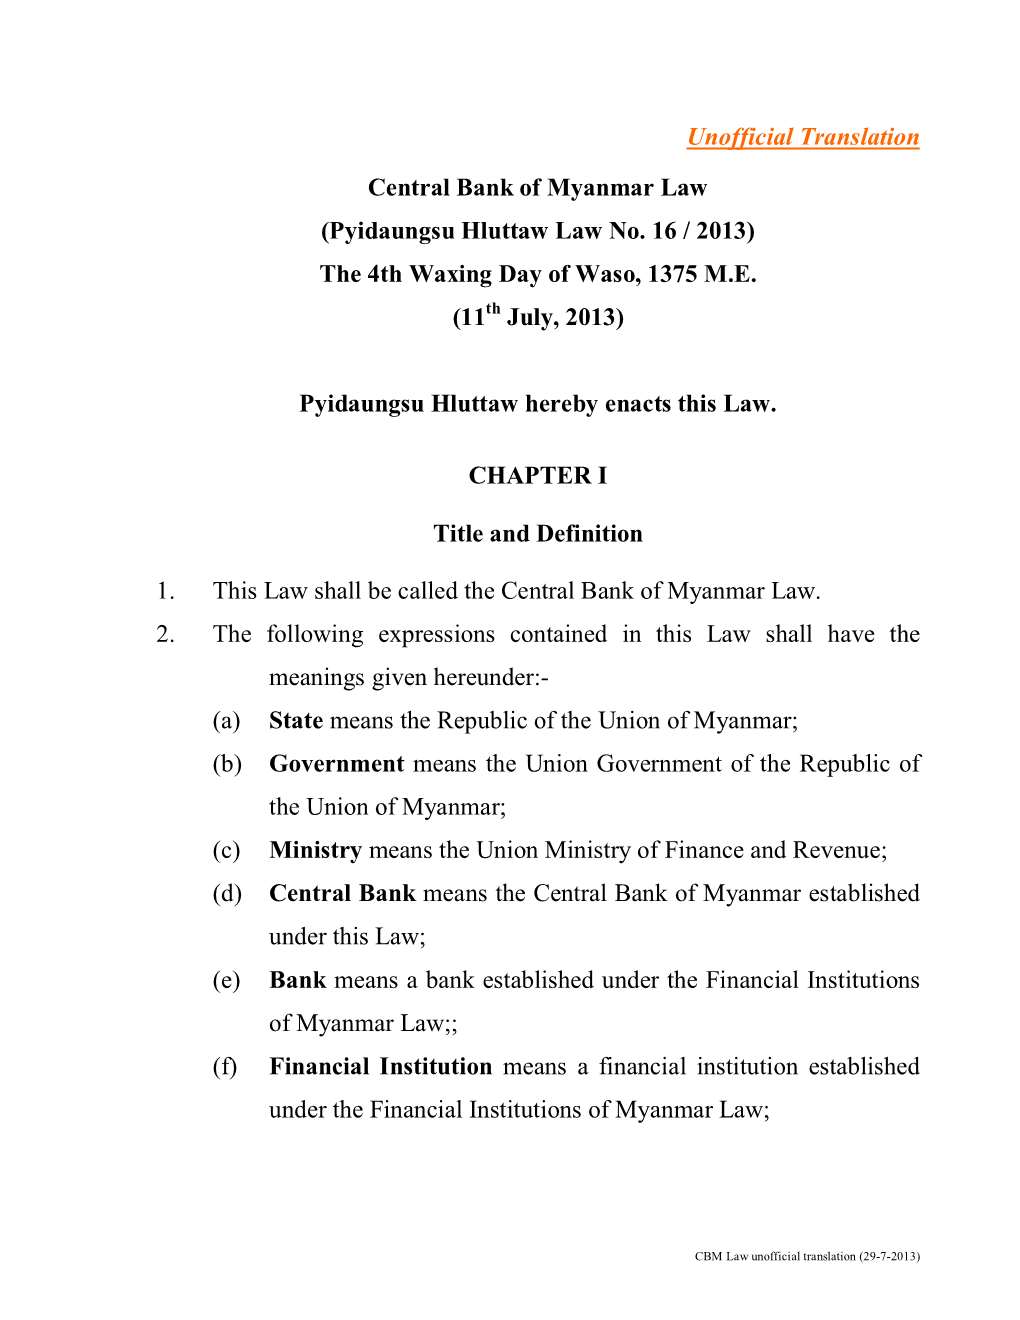 Central Bank of Myanmar Law (Pyidaungsu Hluttaw Law No